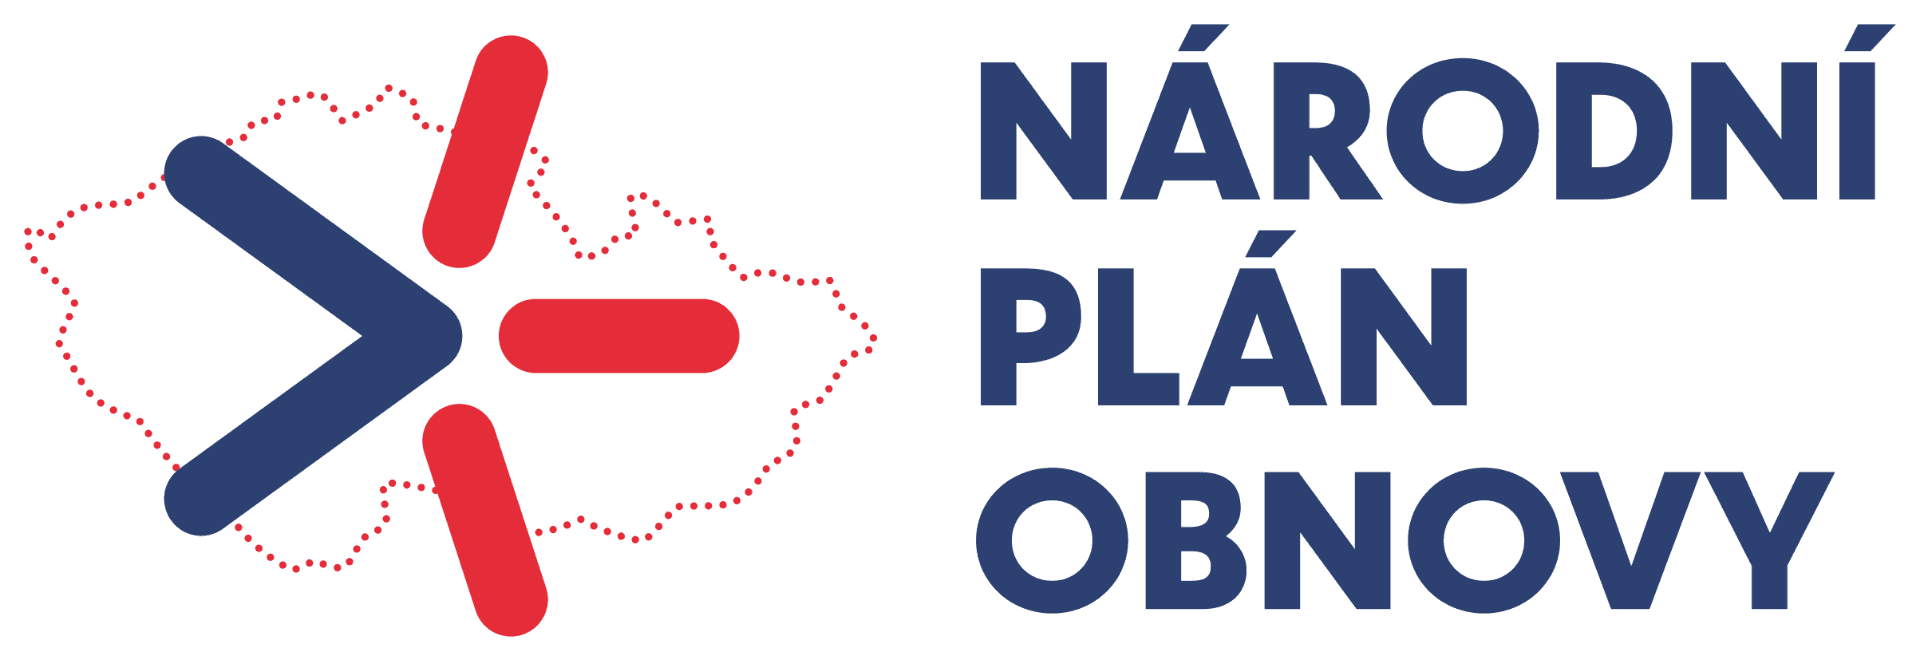 Národní plán obnovy